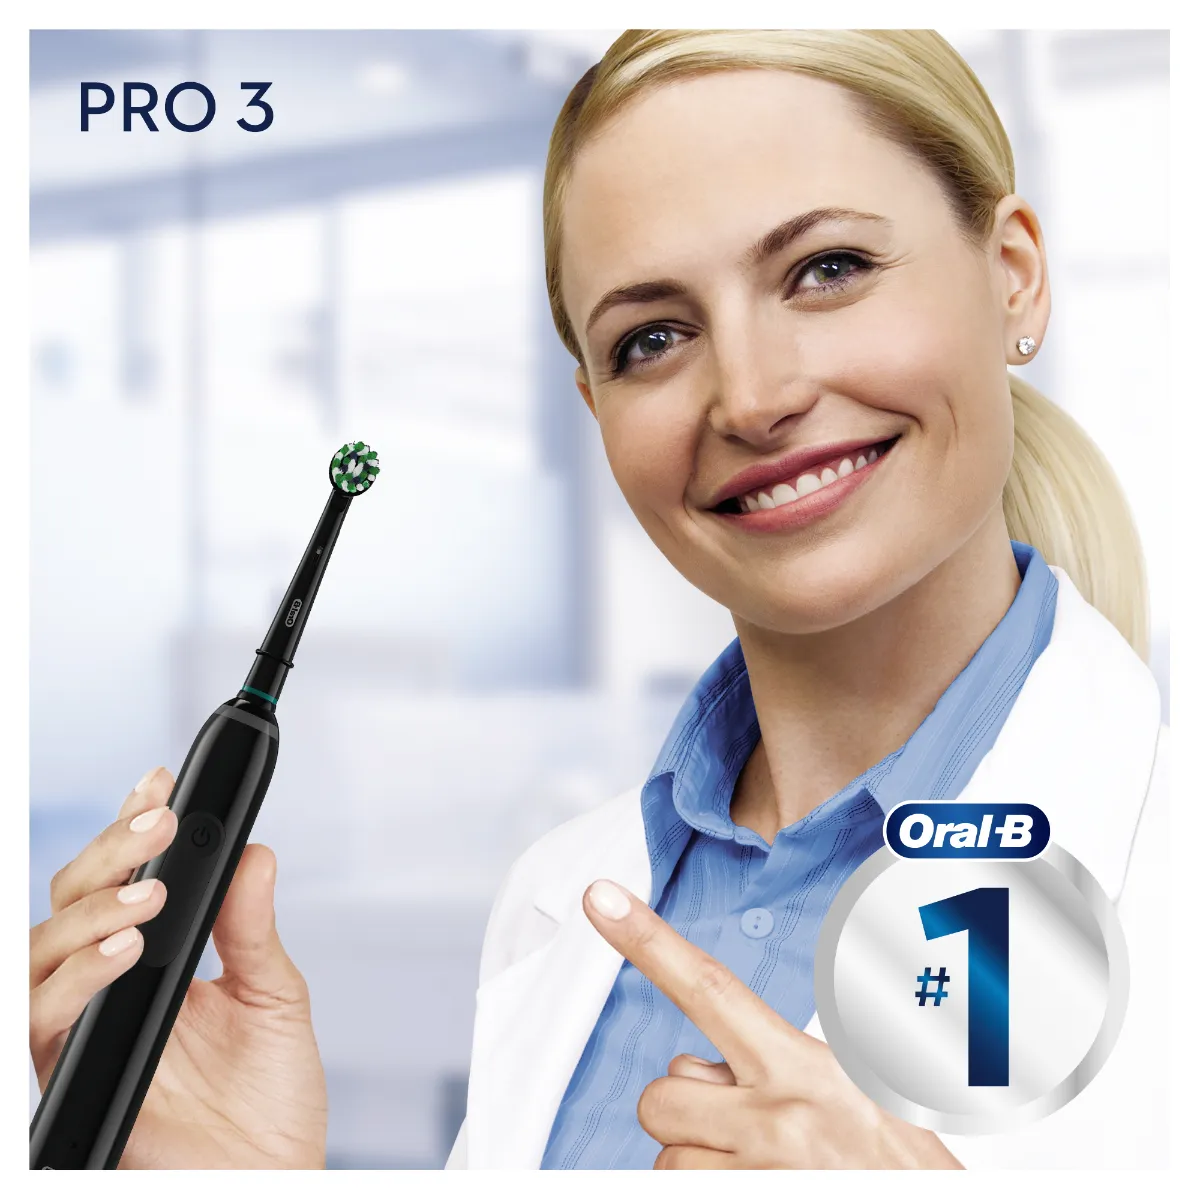 Oral-B PRO 3 3900 Cross Action DUO elektrický zubní kartáček 2 ks